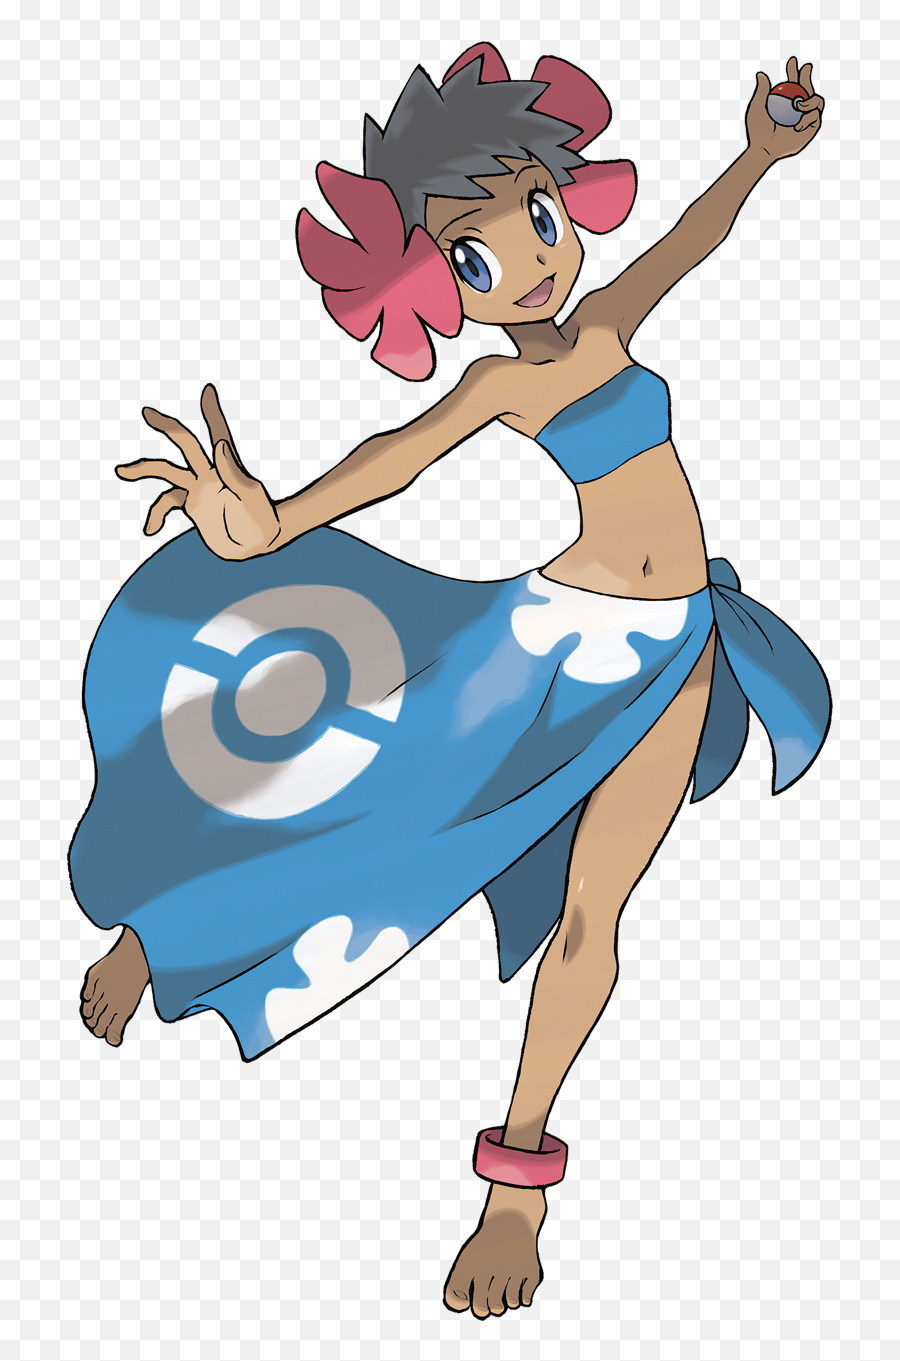 Image - 793337 Pokémon Know Your Meme Emoji,Dance Kirby Dance Emoticon